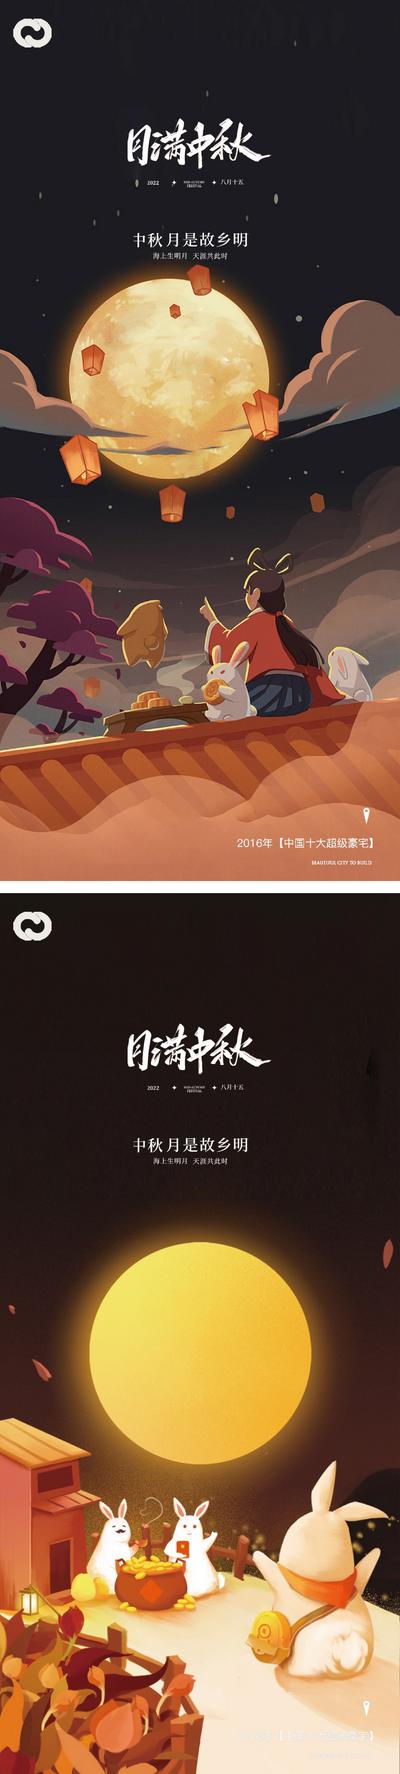 南门网 中秋节日系列海报